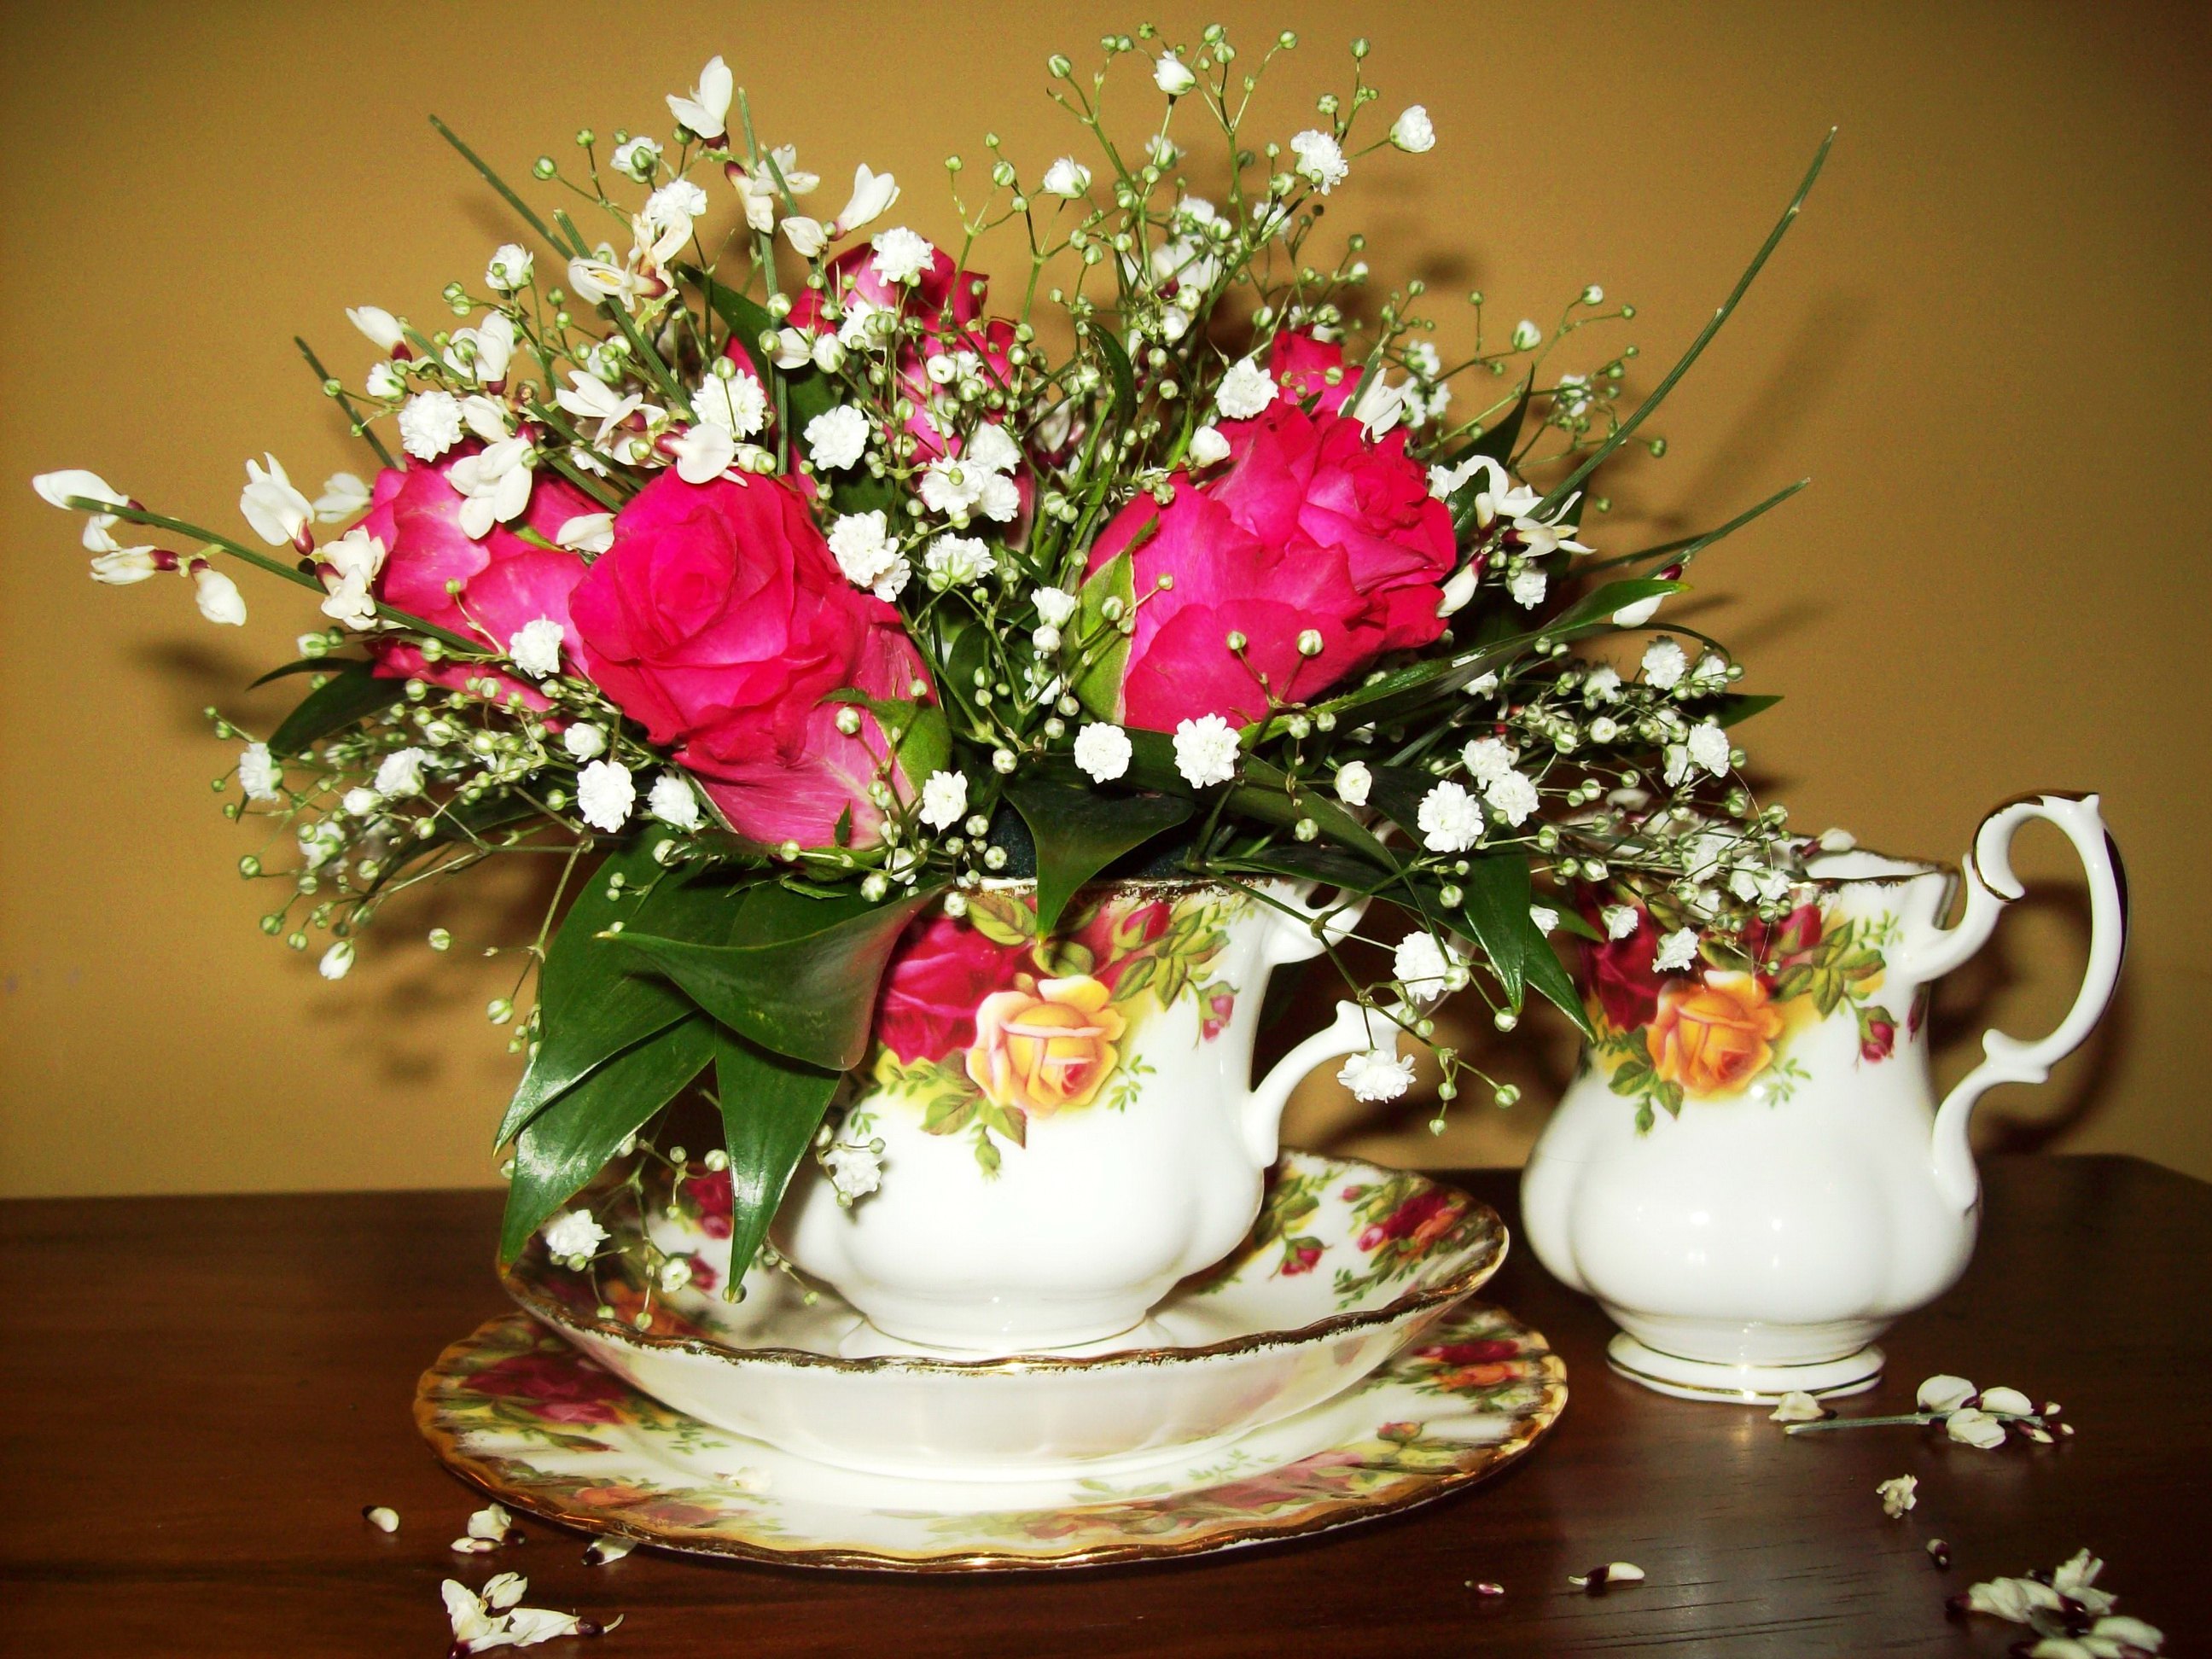 Cups flowers. Цветы в чашке. Красивый букет в чашке. Цветочная композиция в чашке. Wdtns d XFIR.